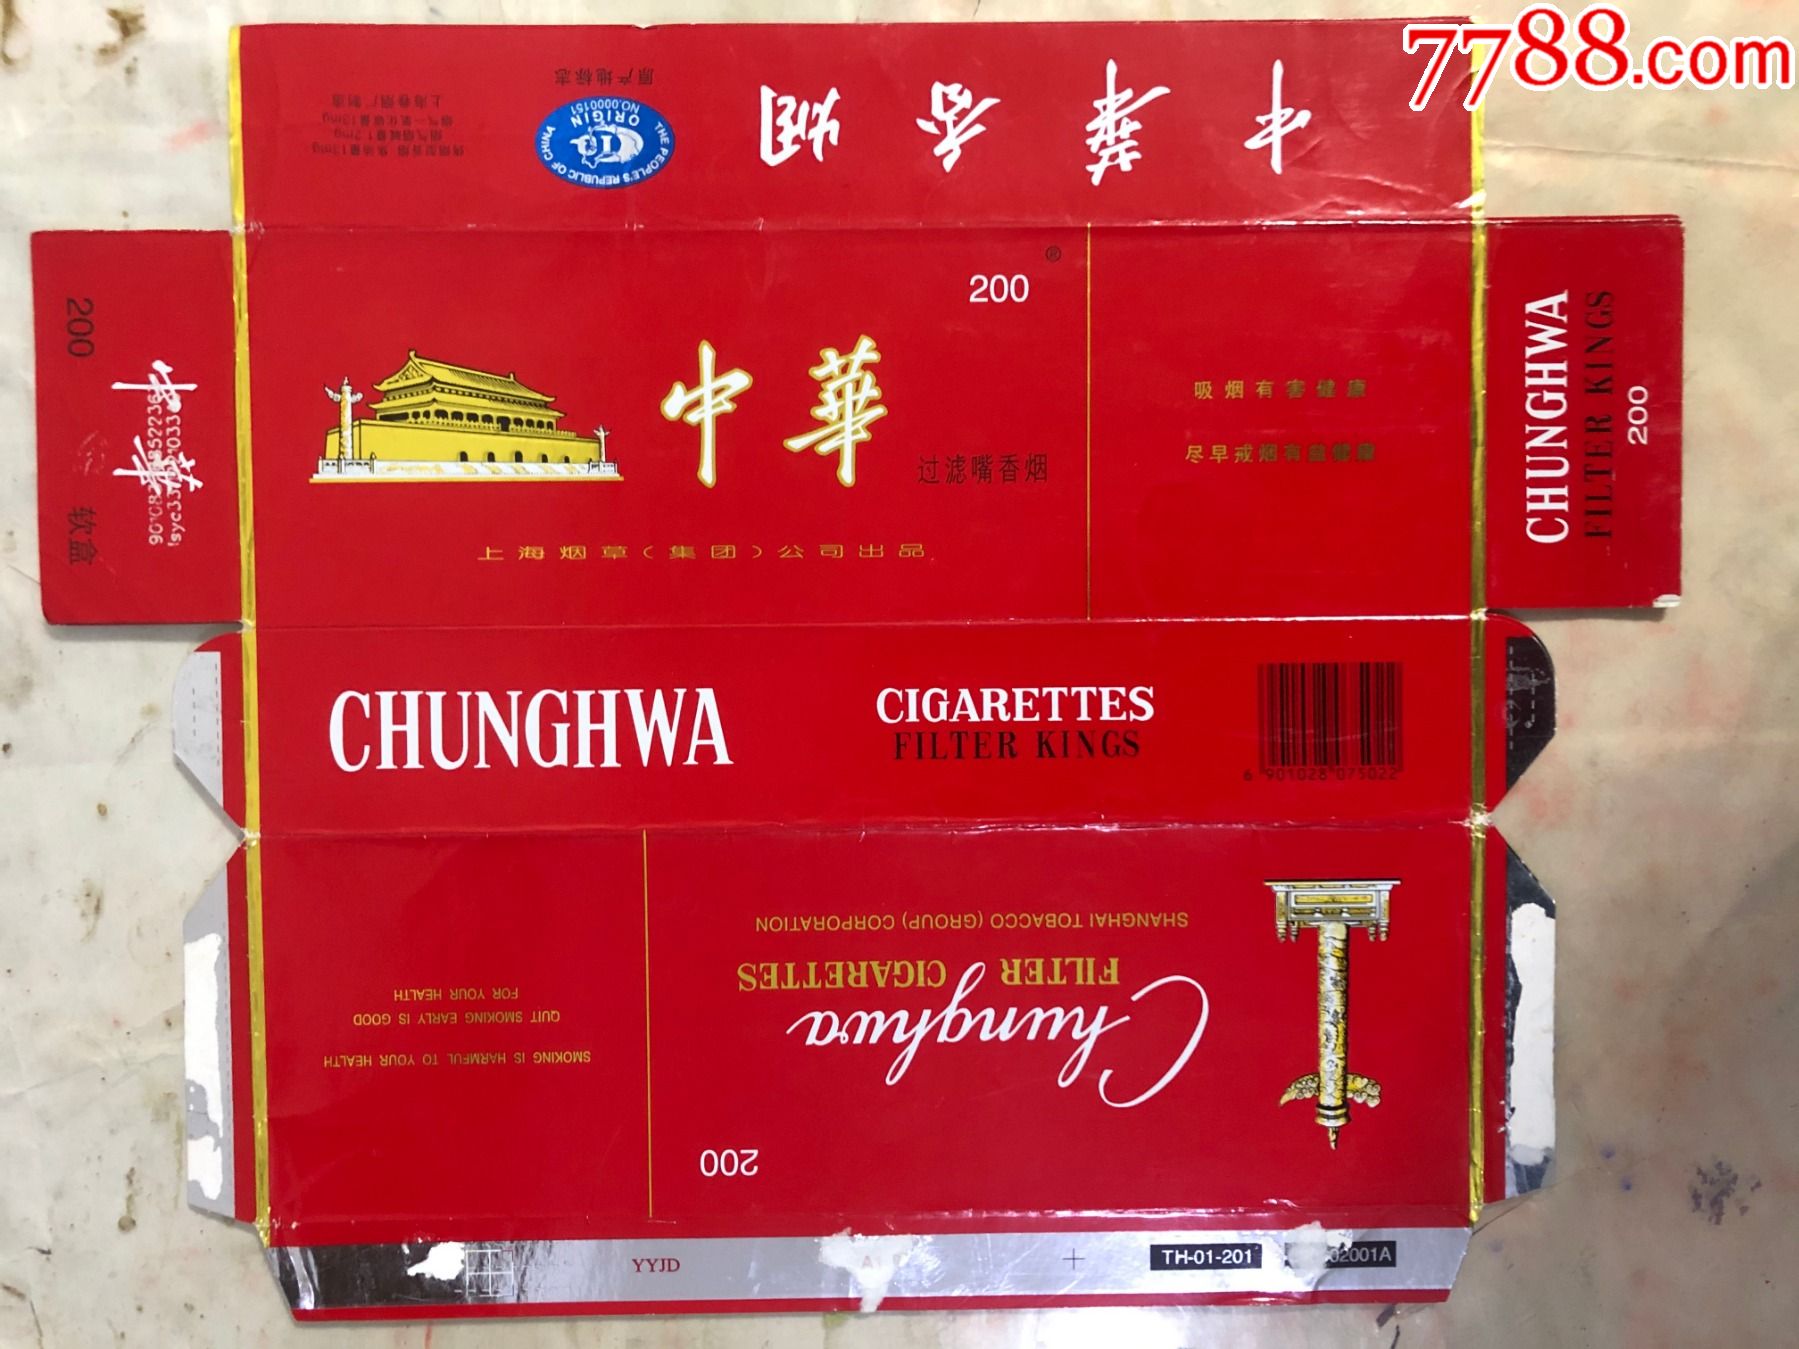 中华烟有几种型号图片大全 中华烟有几种款式